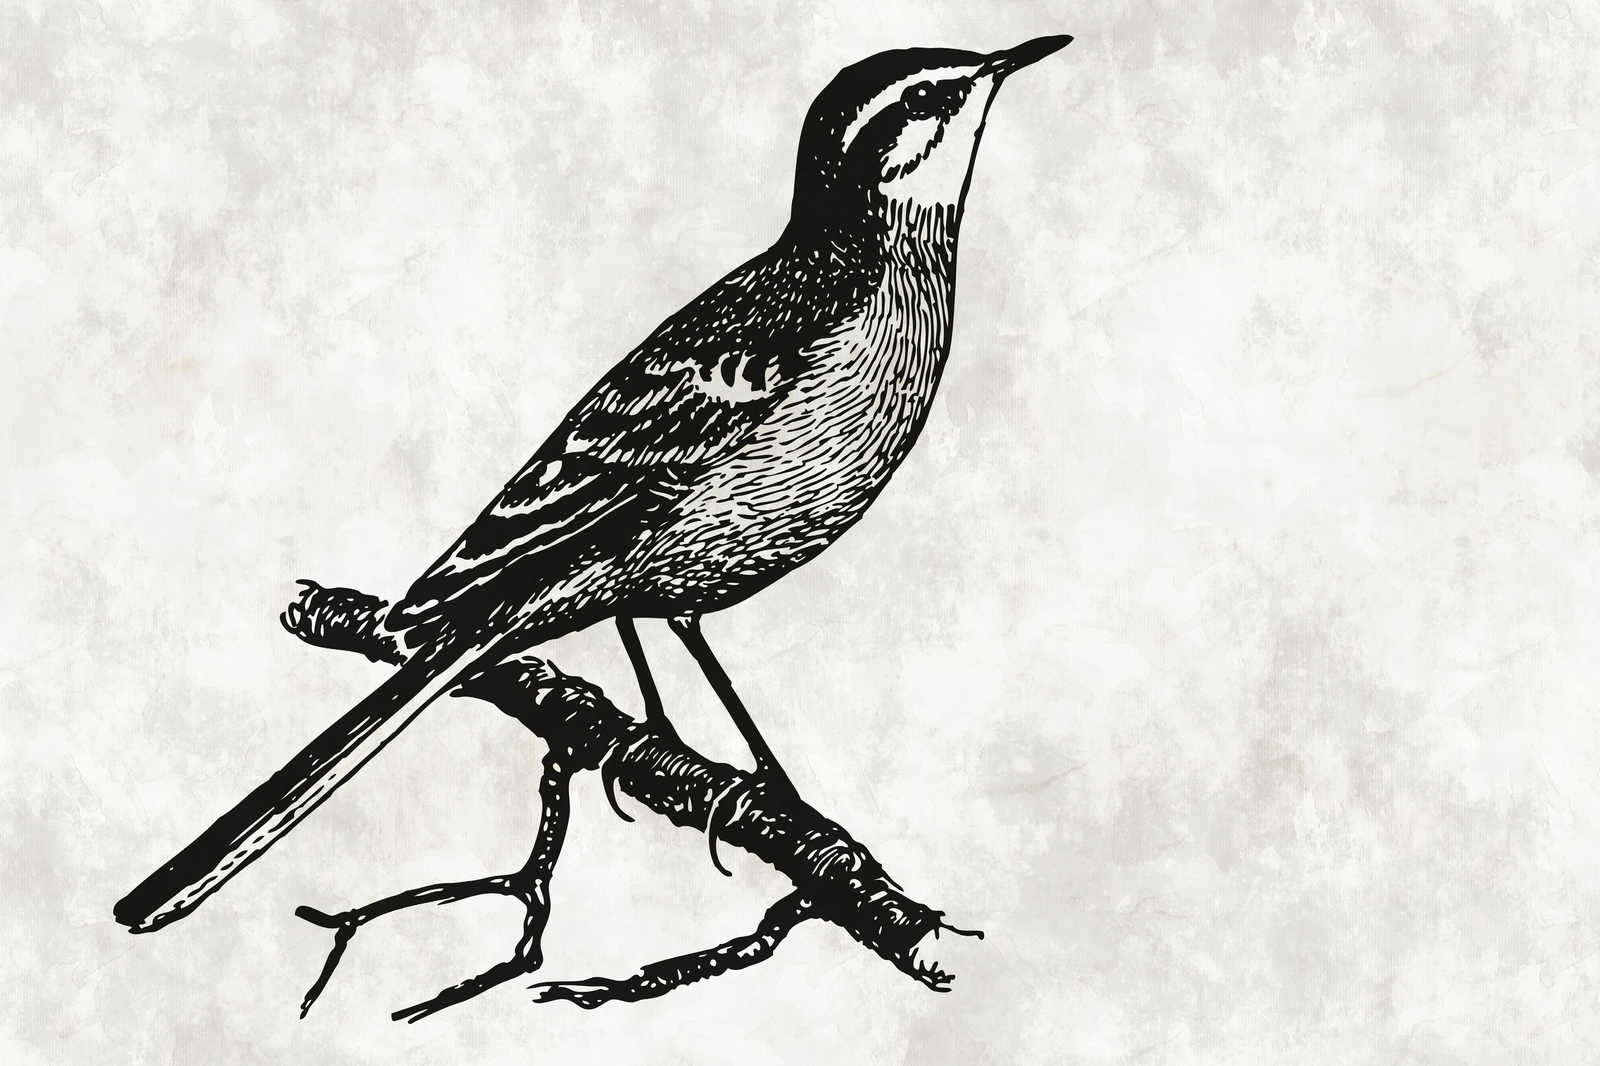             Vogel Leinwandbild im Zeichenlook mit Putzoptik – 0,90 m x 0,60 m
        